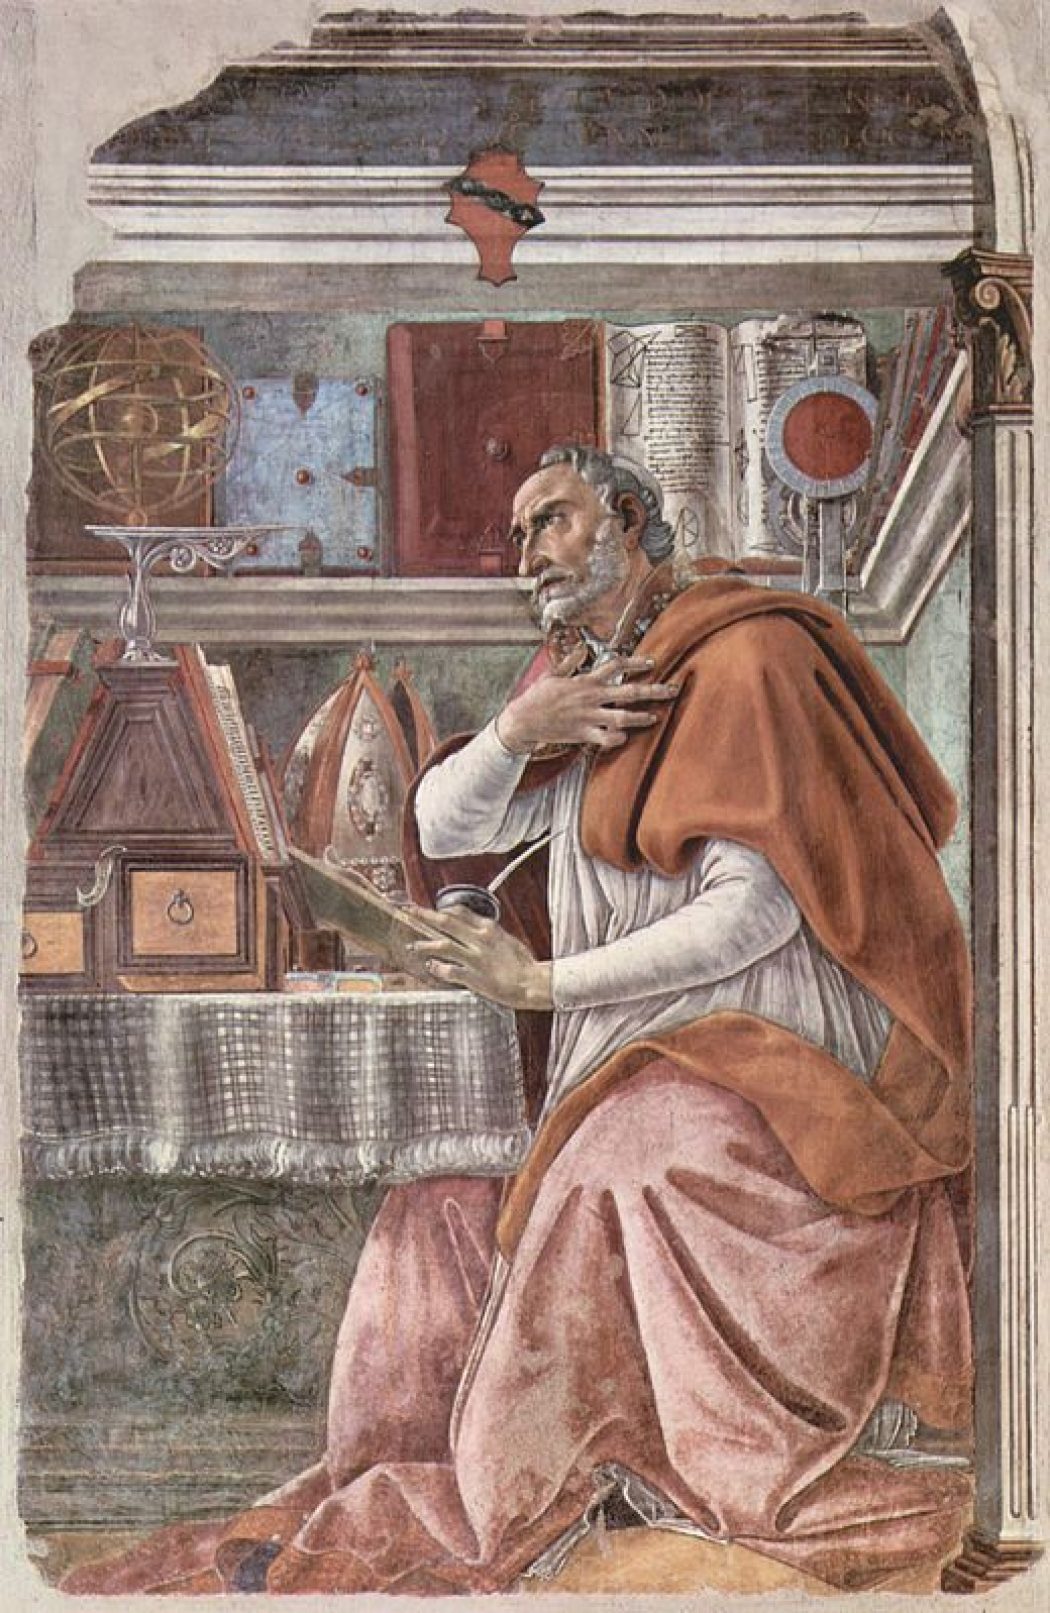 Saint Augustin et la musique comme art et science